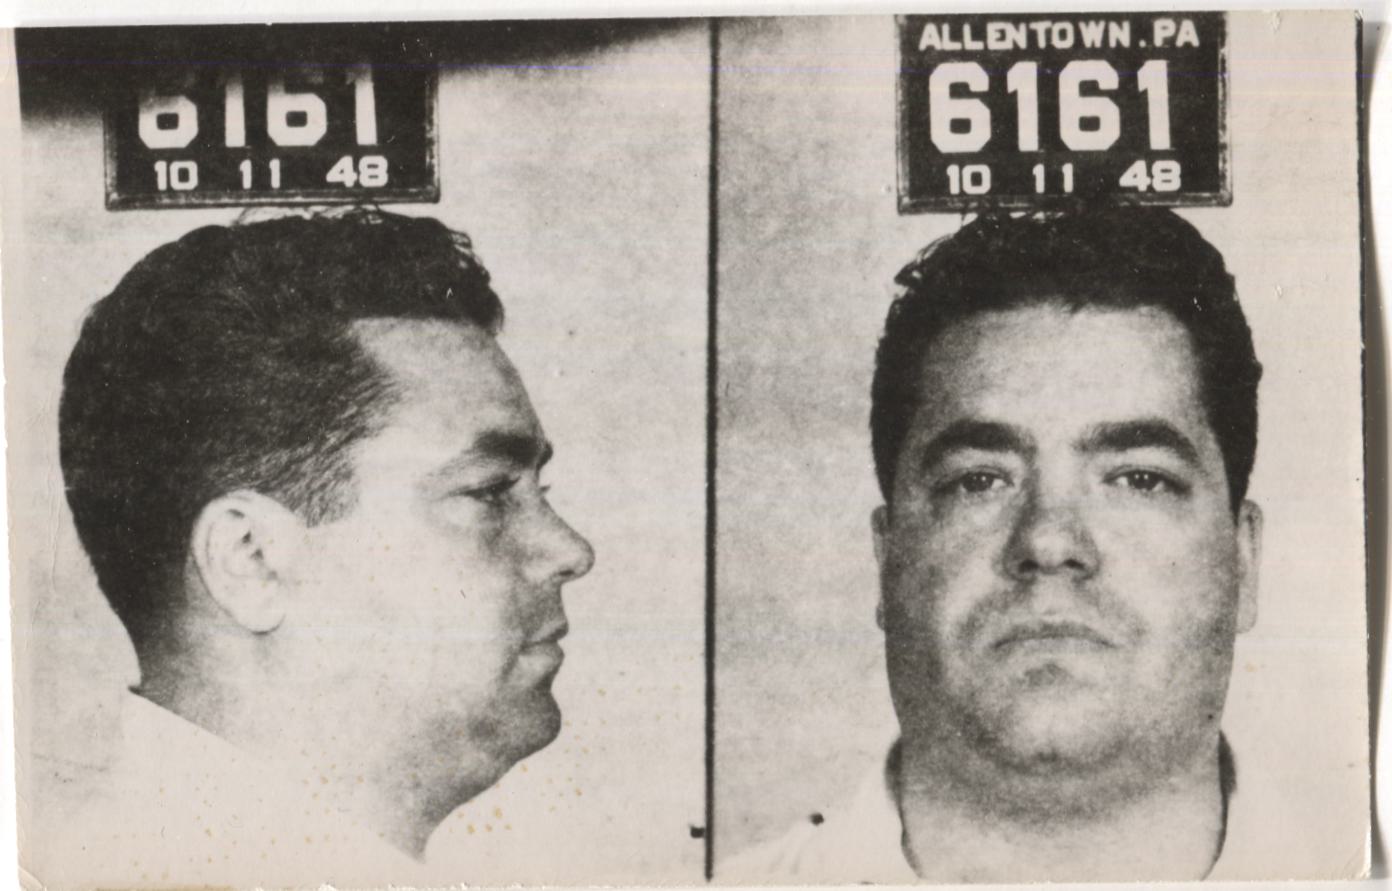 Joseph Dominick Polverino Mugshot - Arrested on 10/11/1948 for Gambling